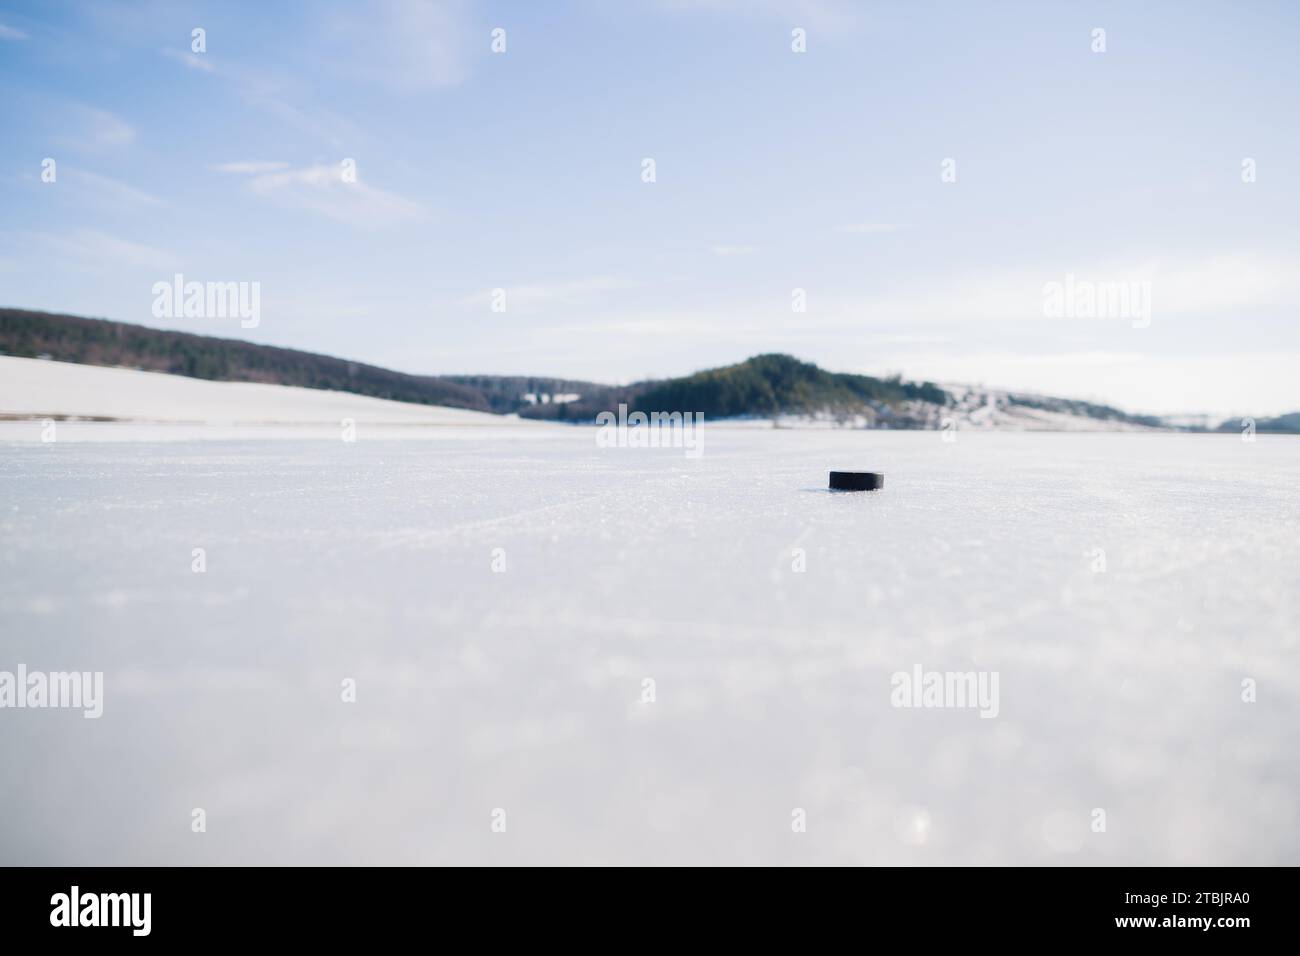 Palet de hockey sur un lac gelé en hiver sur fond de montagnes. Banque D'Images